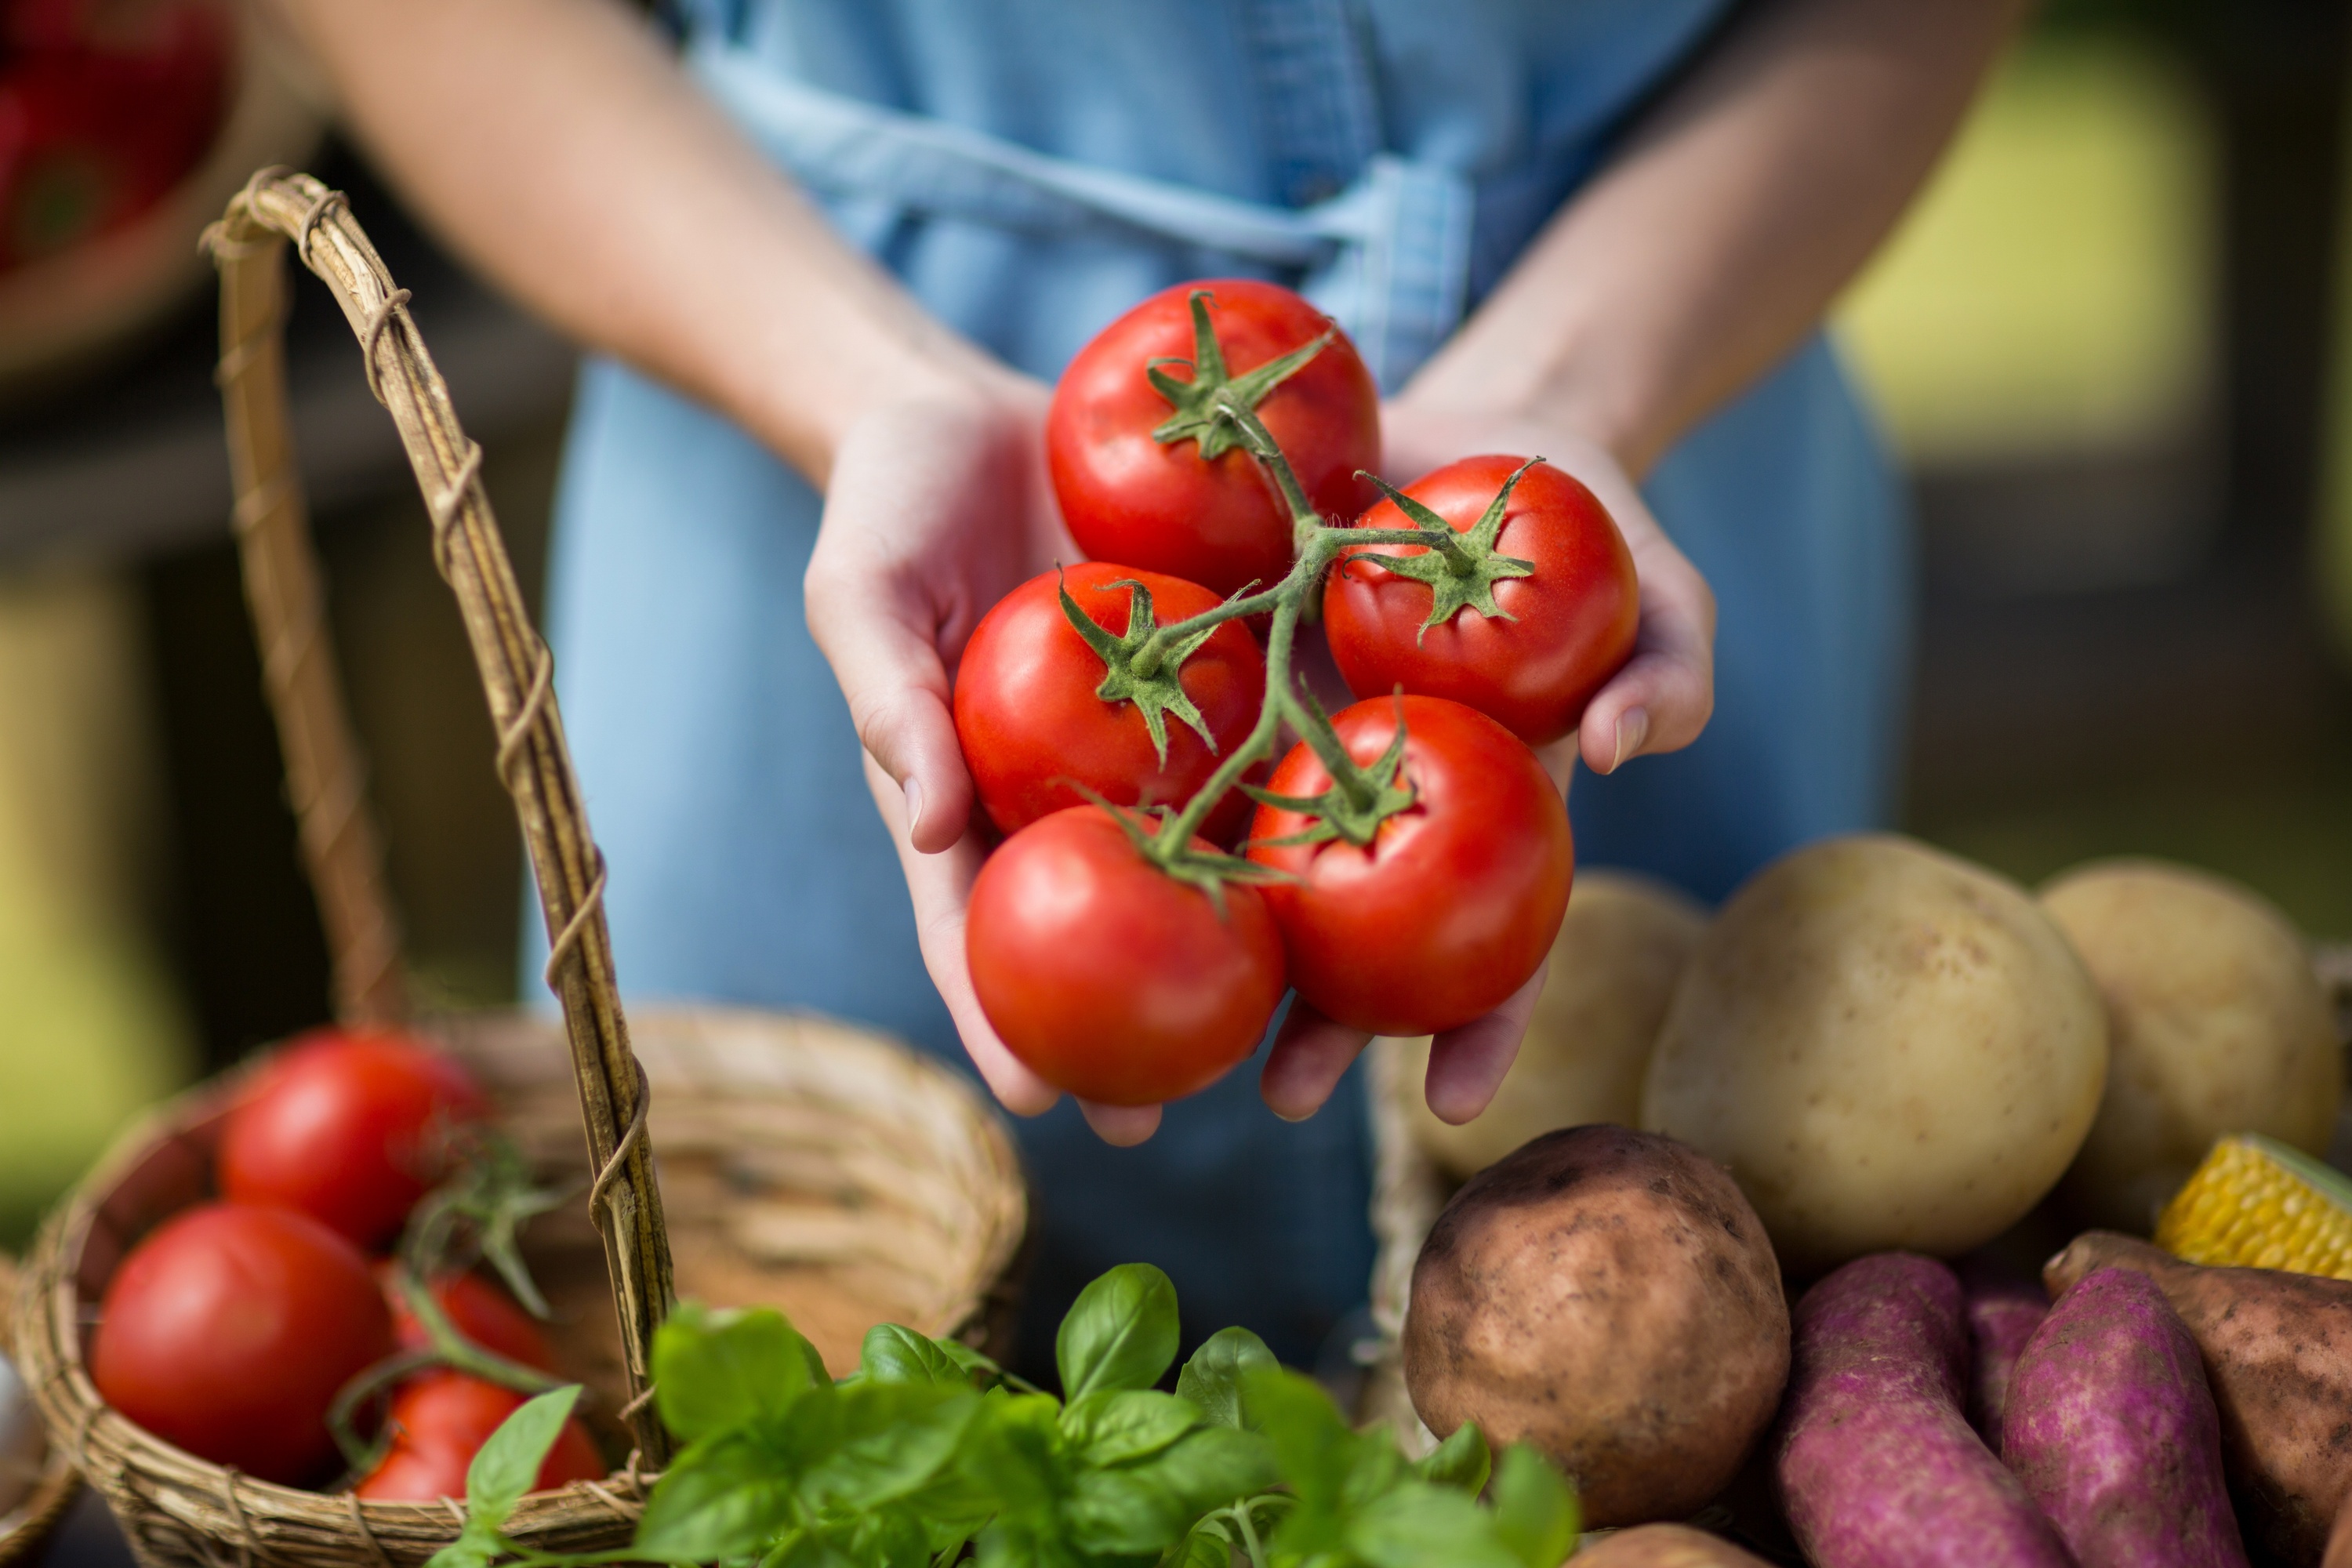 Les tomates et les pommes de terre contiennent des glycoalcaloïdes, des composés susceptibles de présenter des propriétés antitumorales efficaces. © WavebreakMediaMicro, Adobe Stock